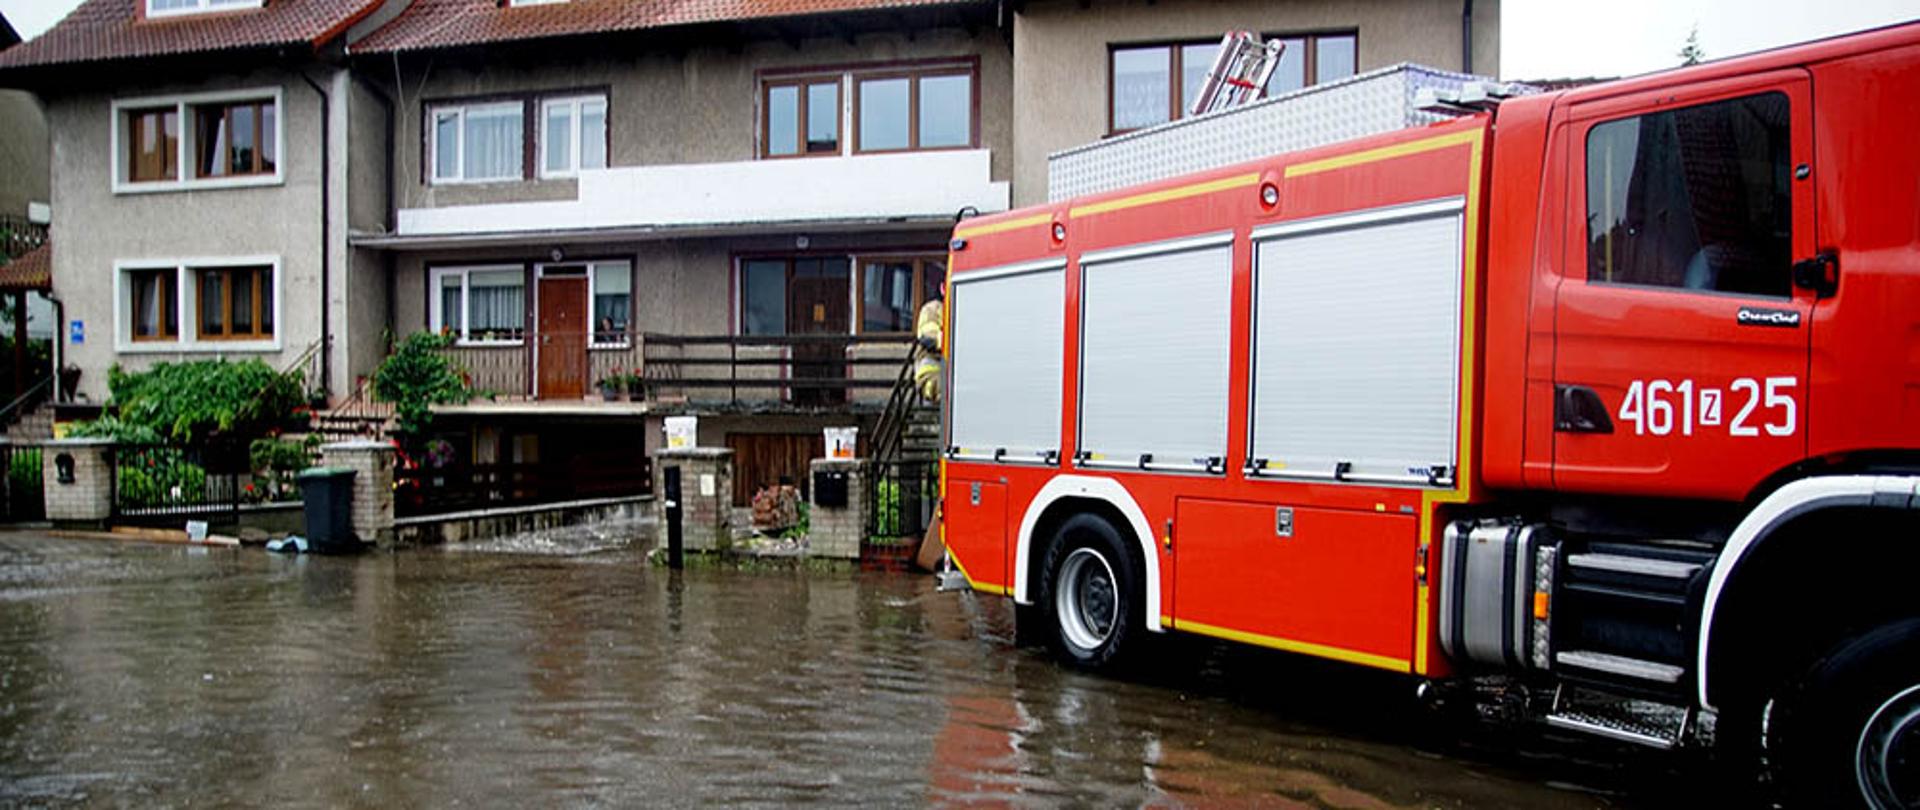 Zdjęcie przedstawia wóz straży pożarnej na zalanej wodą ulicy.w tle widać zabudowania.